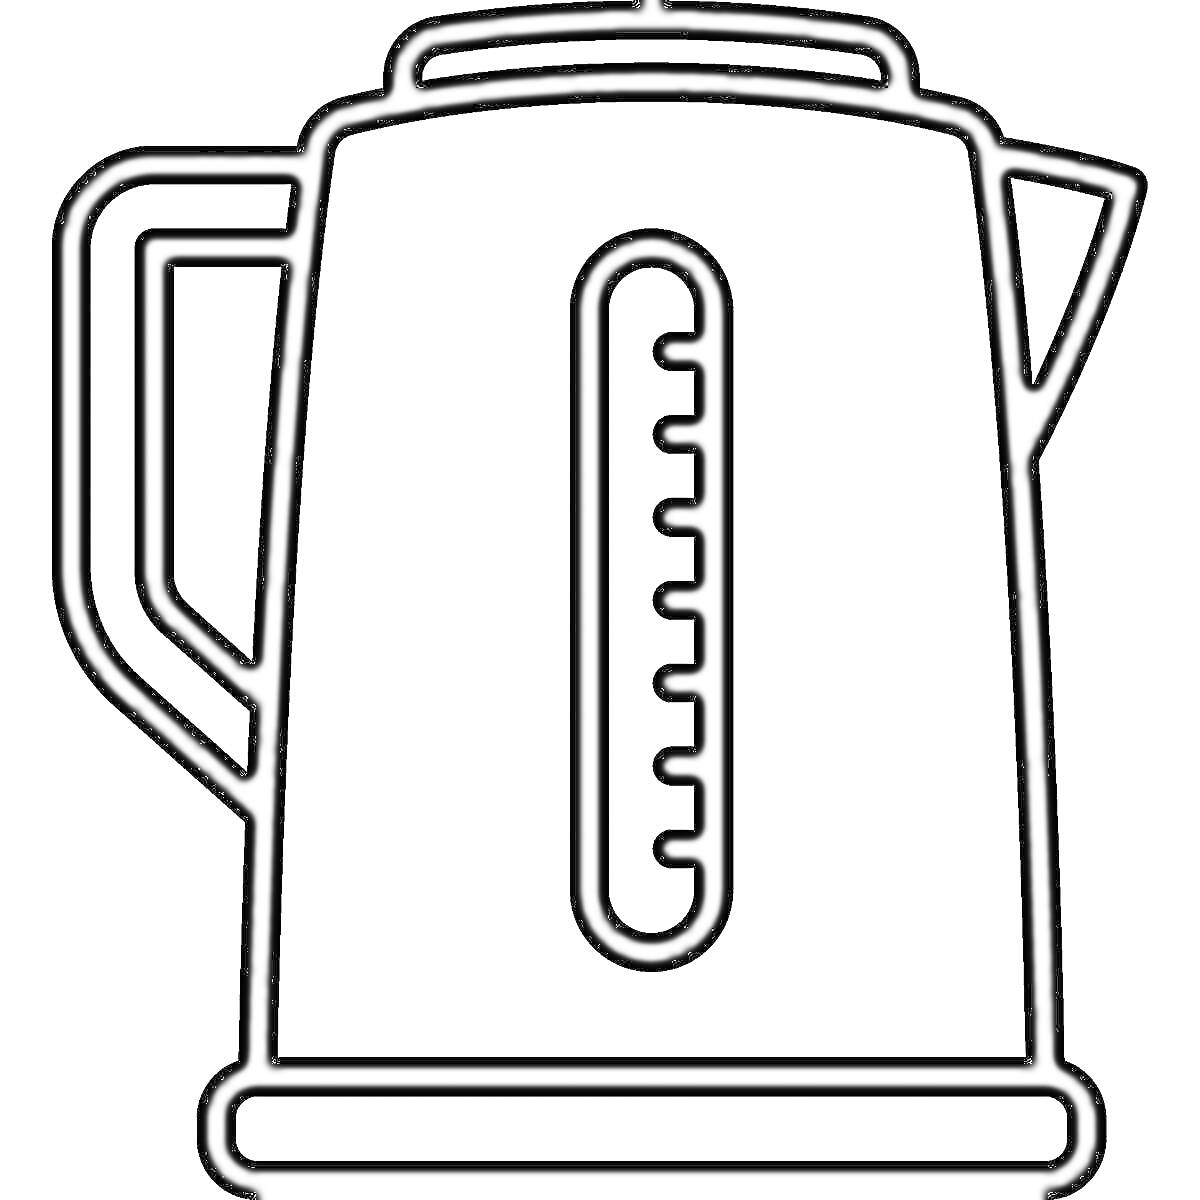 Раскраска Чёрно-белая раскраска с изображением электрического чайника с ручкой и шкалой уровня воды